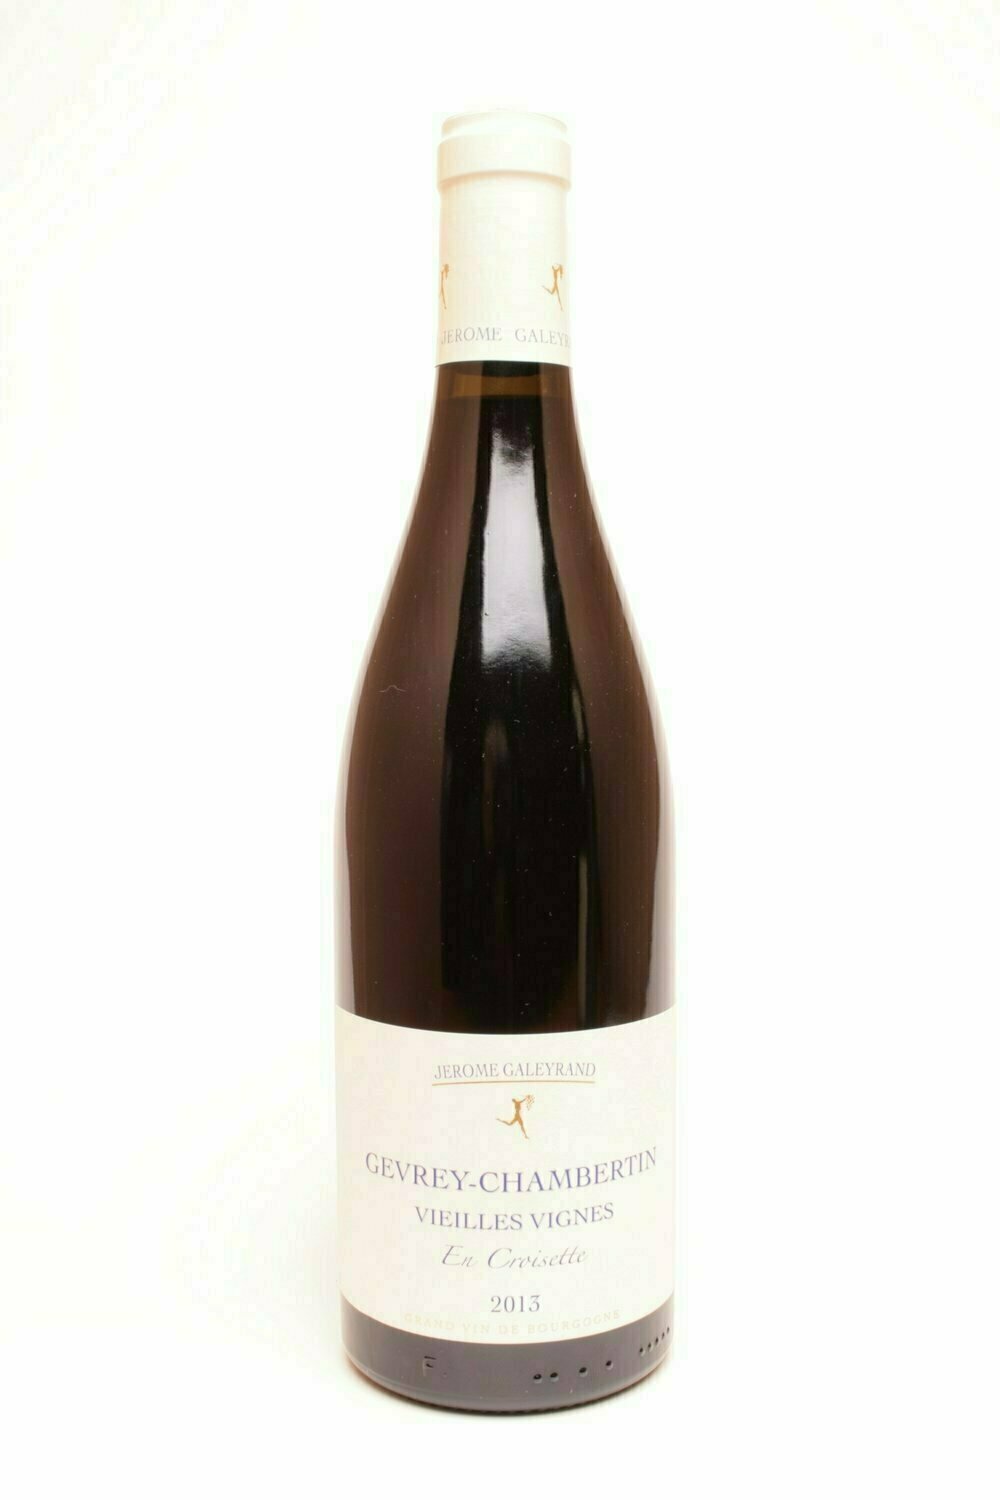 Domaine Jérôme Galeyrand Gevrey-Chambertin Les Croisettes Vieilles Vignes 2012